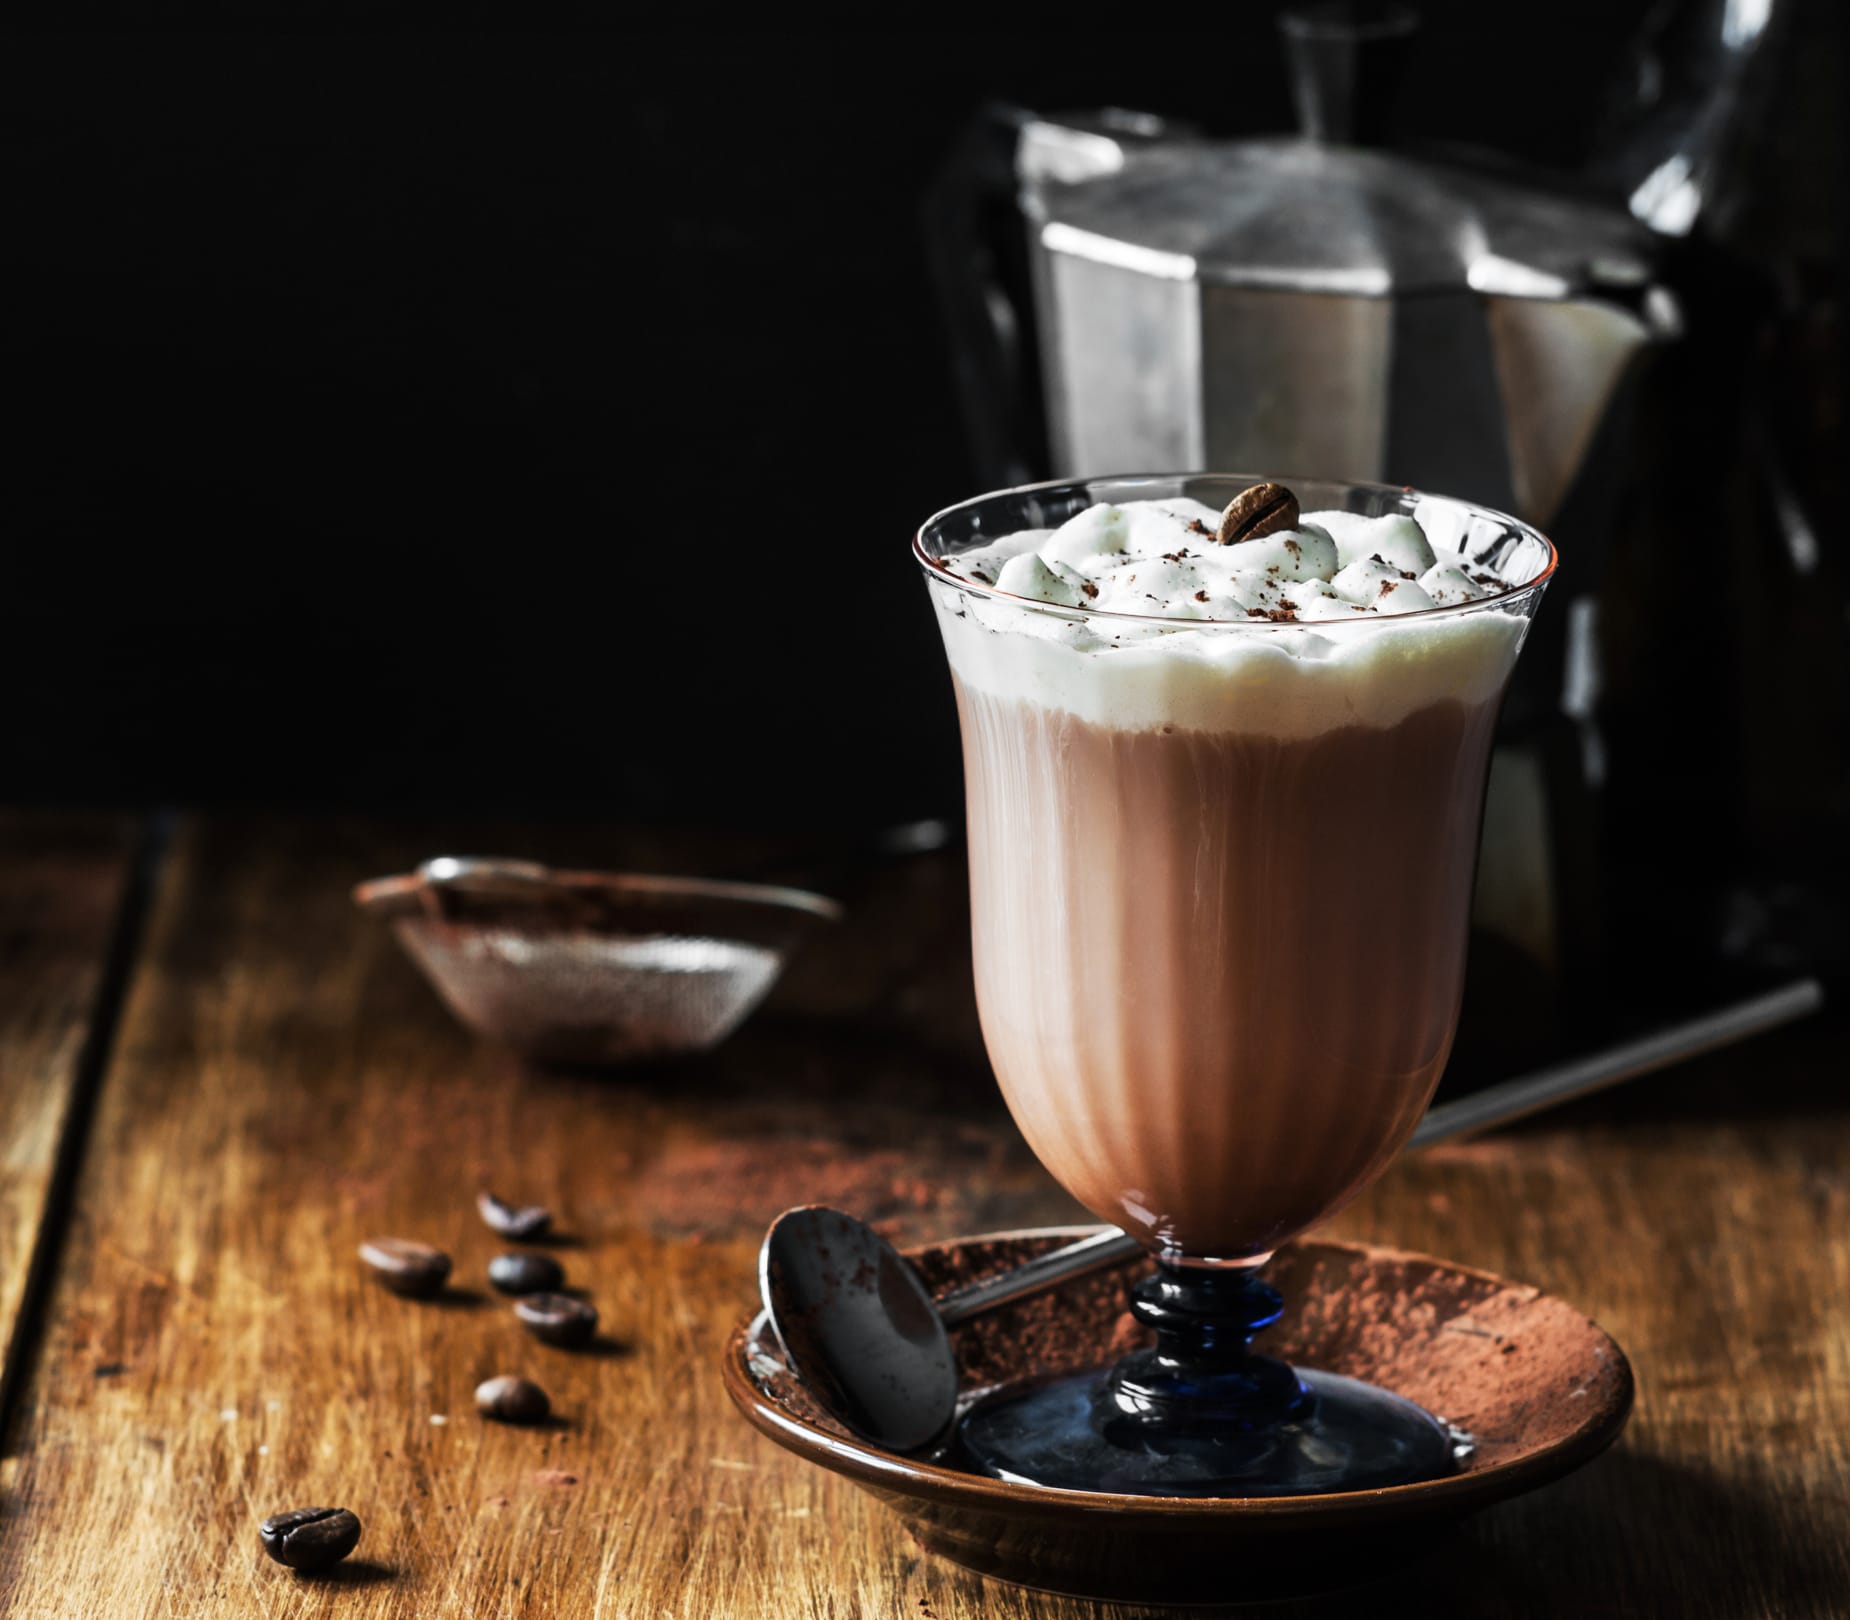 Beim "Irisch Coffee" wird der Kaffee durch Irischen Whiskey und karamellisierten Zucker ergänzt. Eine Sahnehaube und Kakaopulver runden ihn ab.